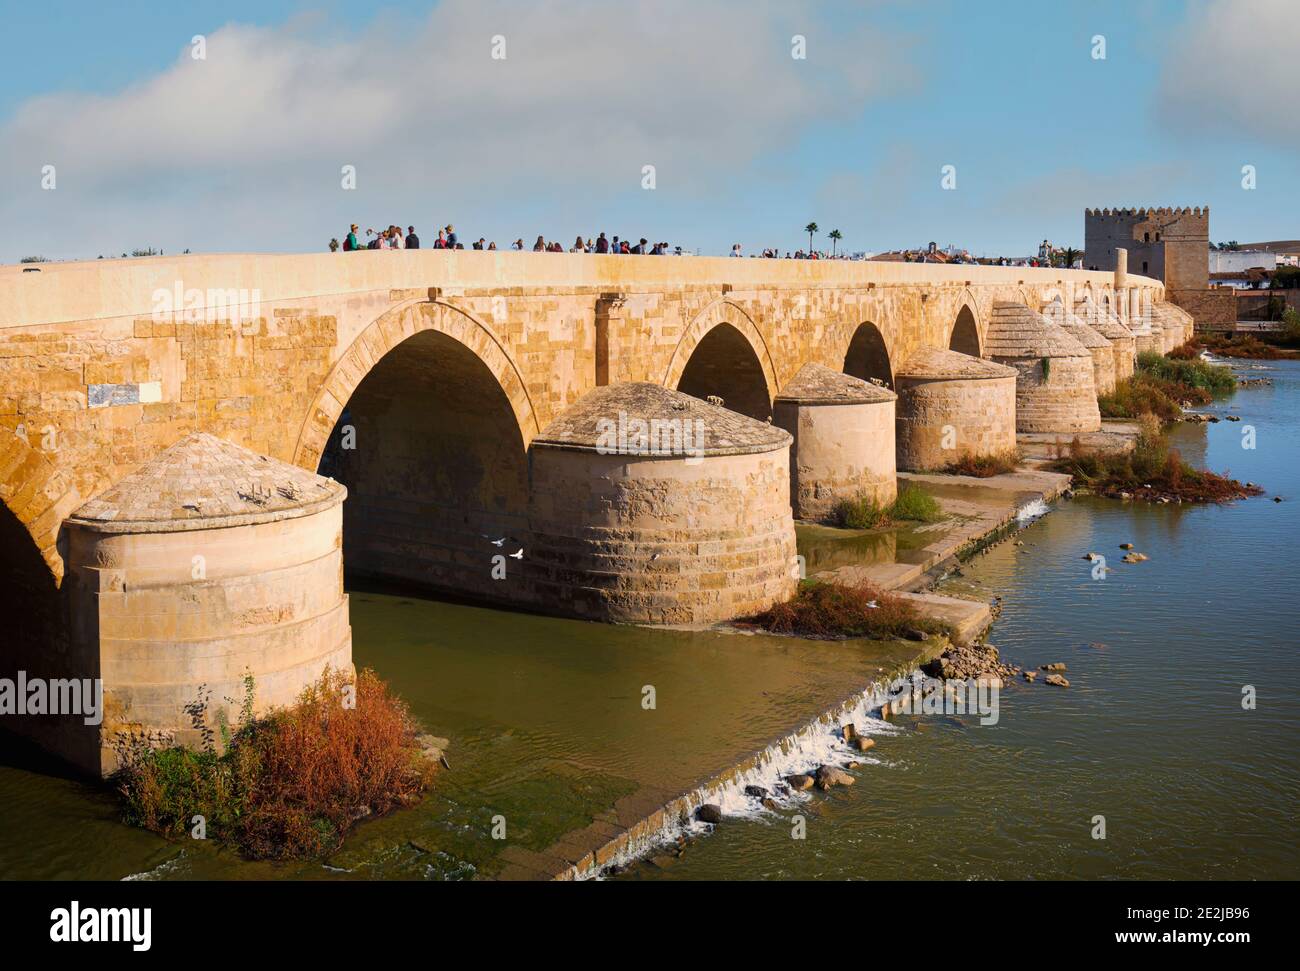 Le pont romain traversant le fleuve Guadalquivir. Les origines du pont remontent au premier siècle avant Jésus-Christ, jusqu’à la Cordoue romaine. Il a été reconstruit seve Banque D'Images